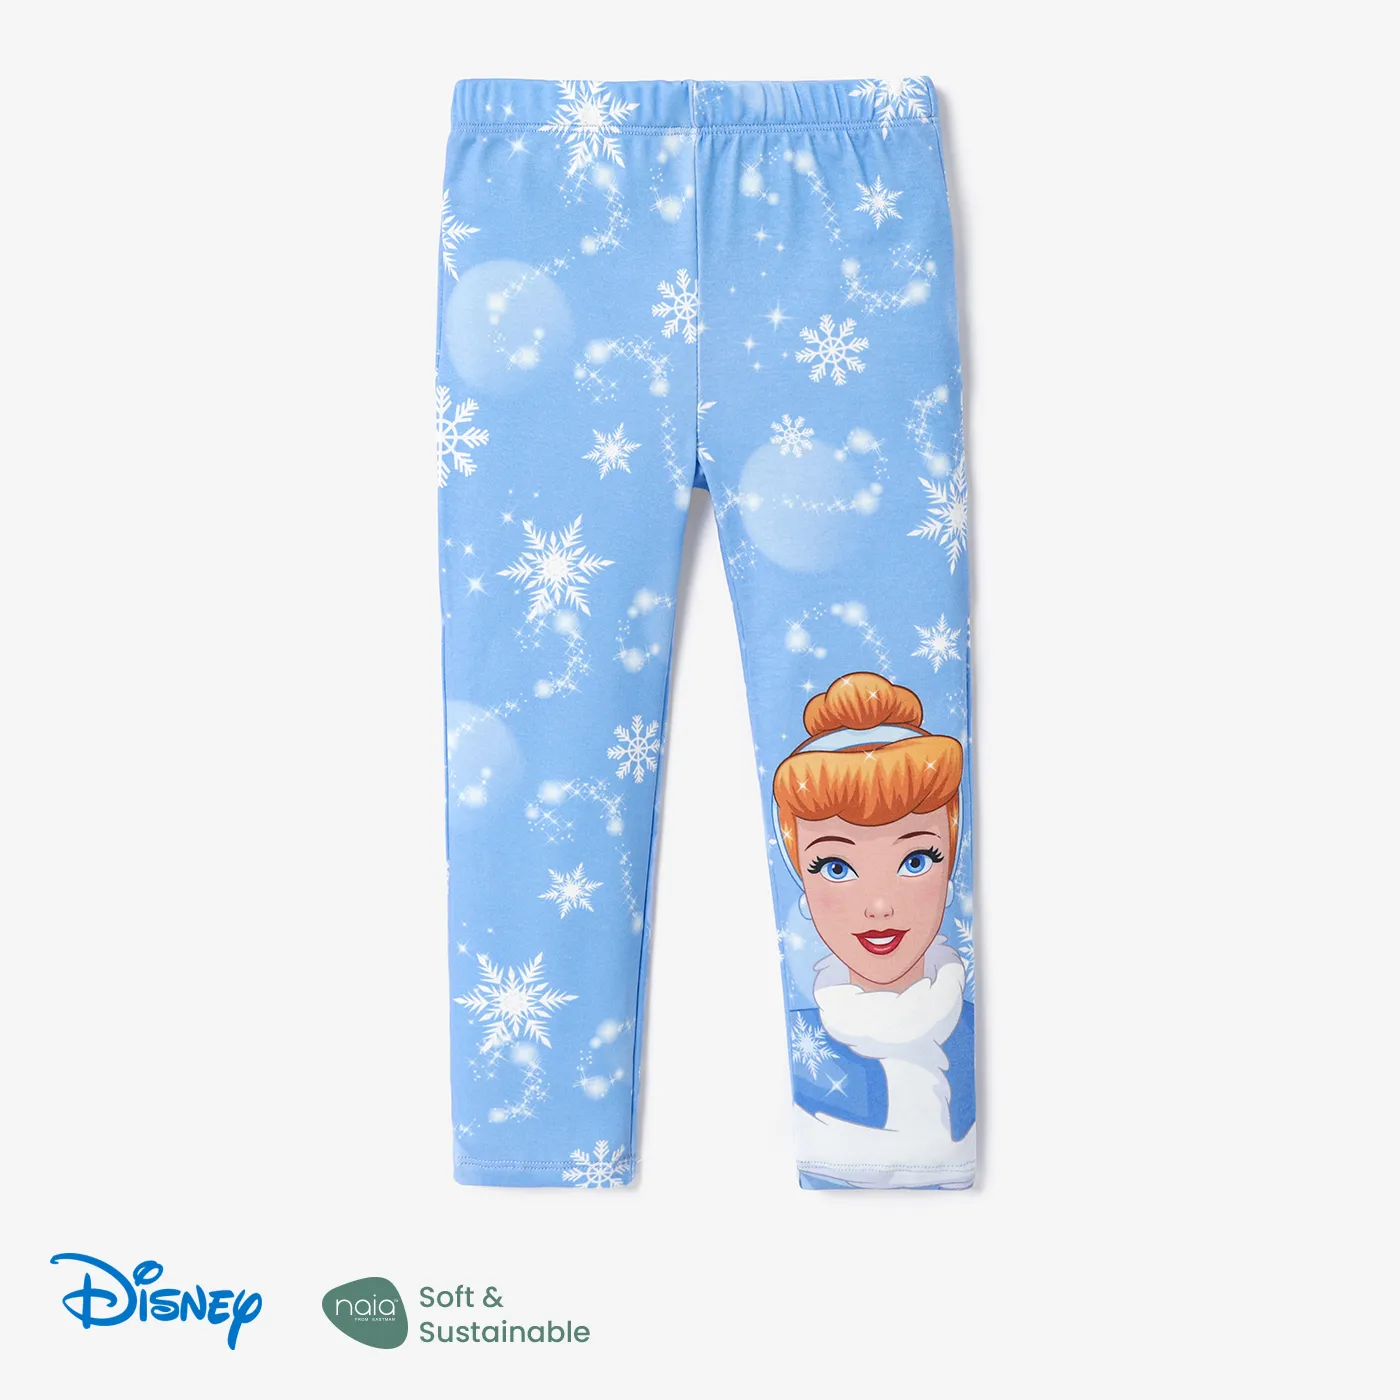 Disney Princess Toddler Girl Naiaâ¢ Character & Snowflake Print Leggings